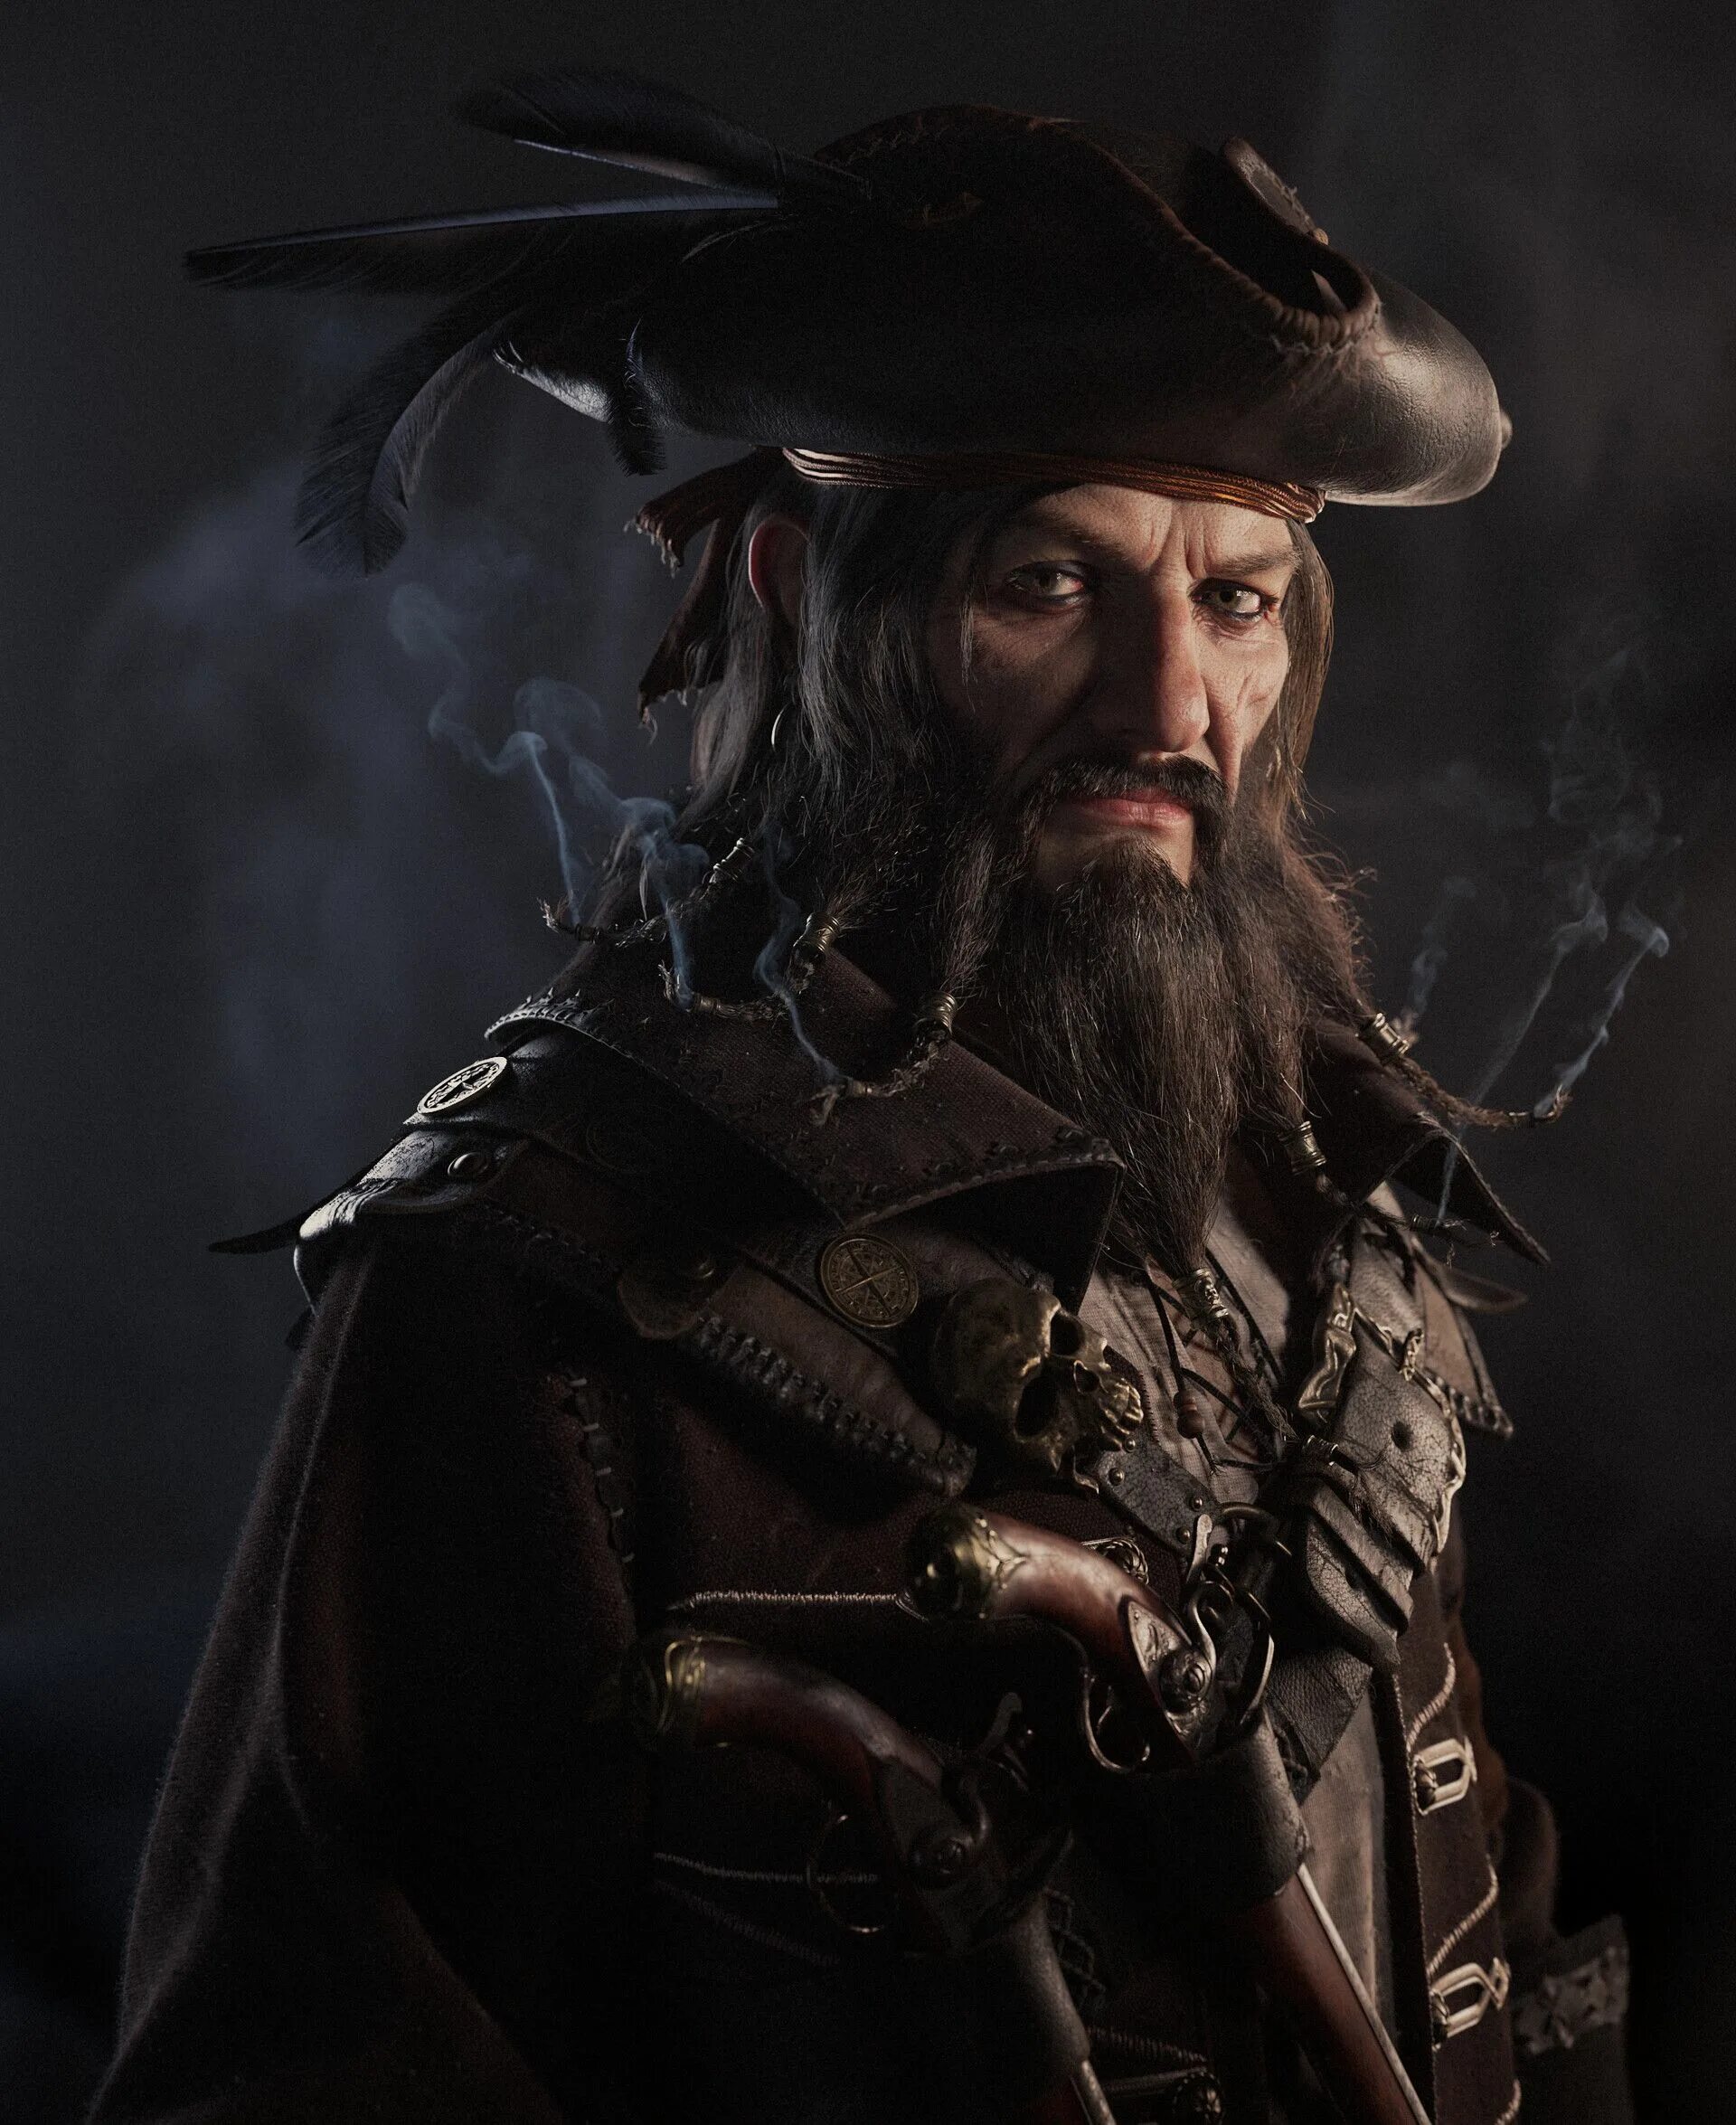 Пираты черный капитан. Борода пирата черная.